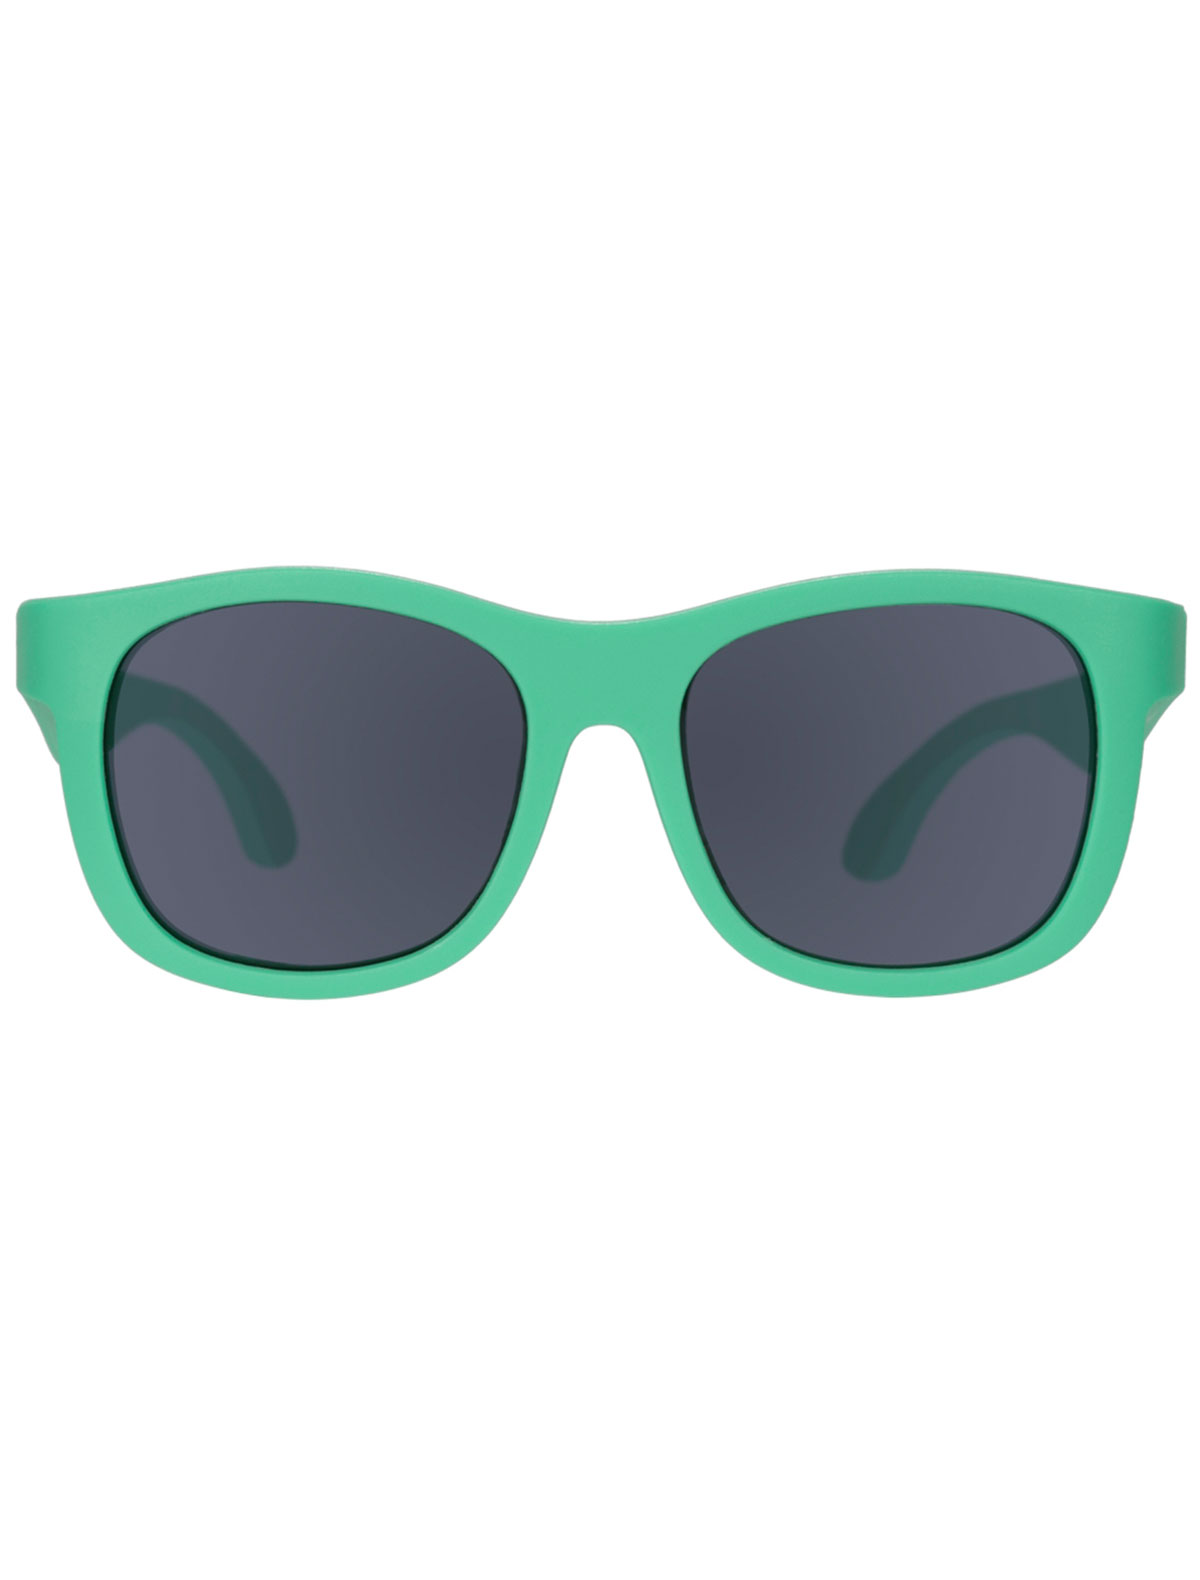 солнцезащитные очки babiators малыши, зеленые